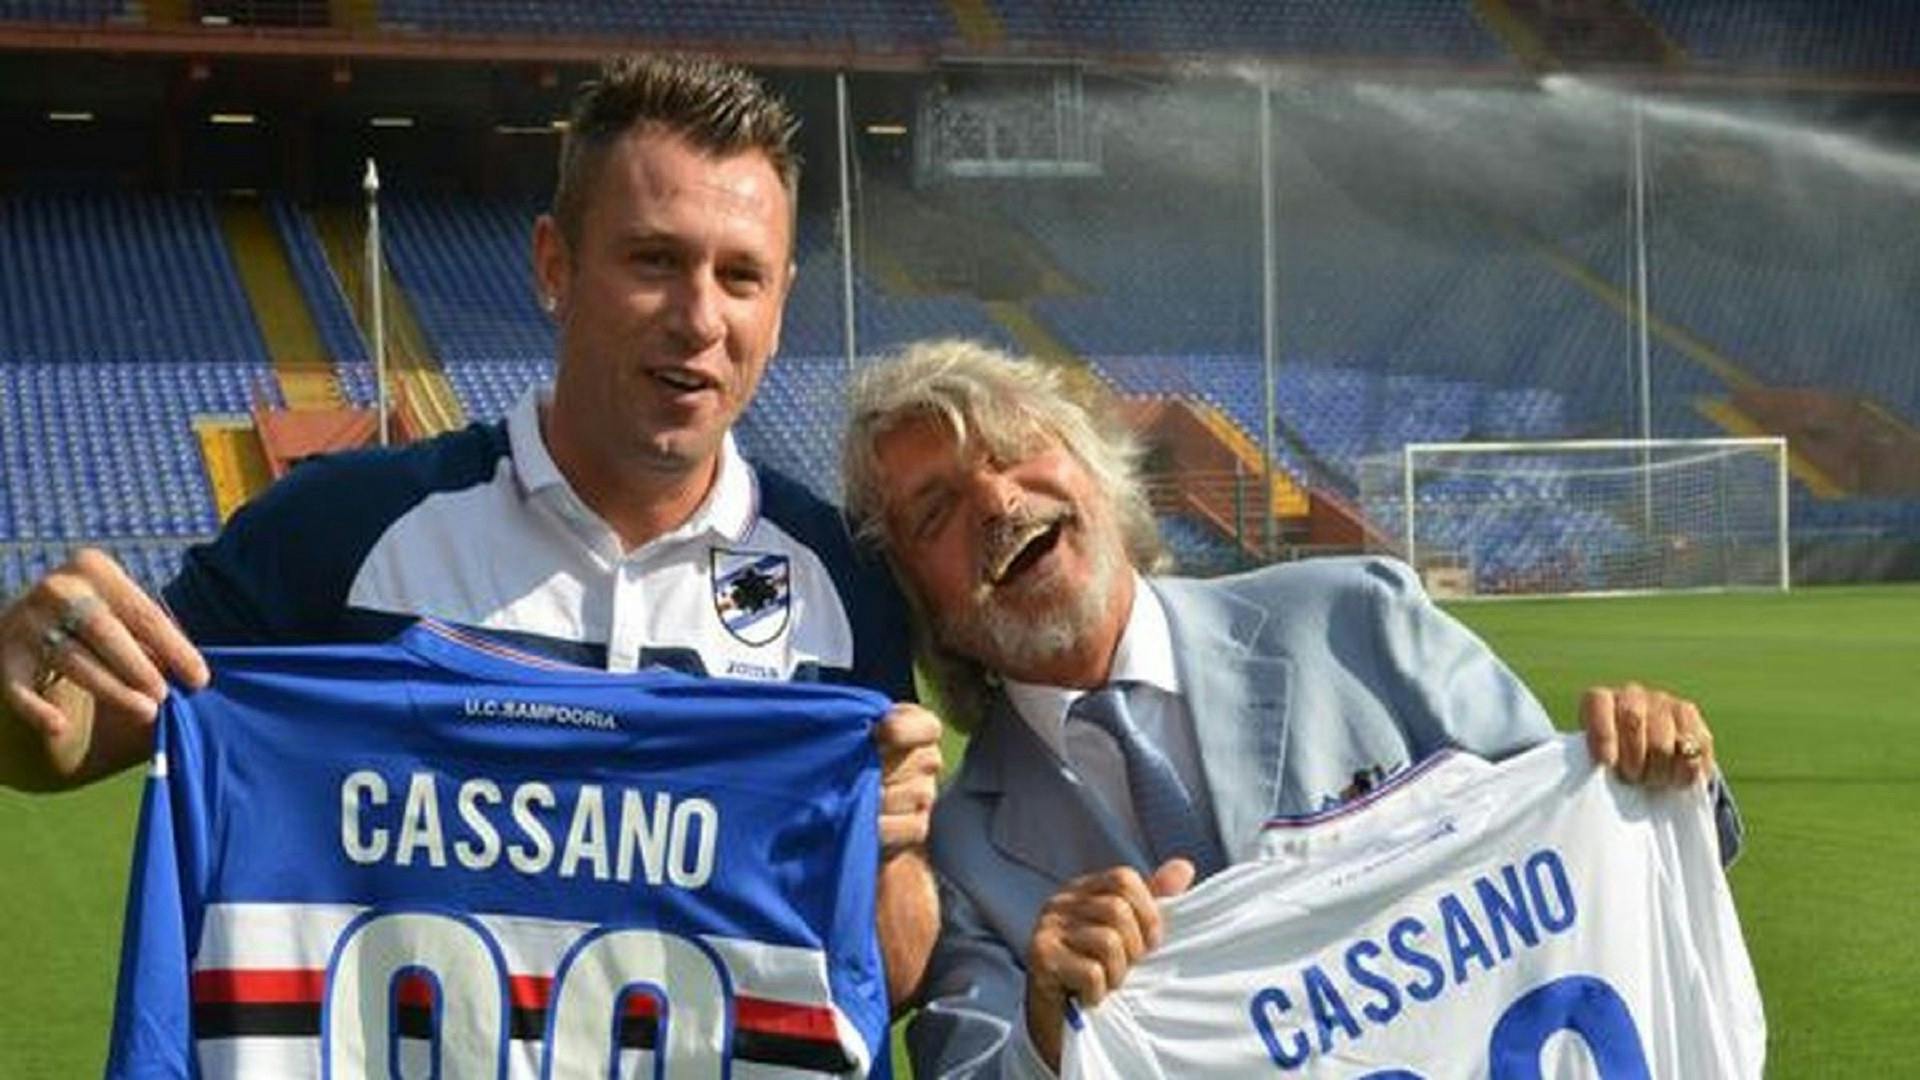 Ferrero su Cassano: "Il problema è lui stesso". Cosa intendeva dire?